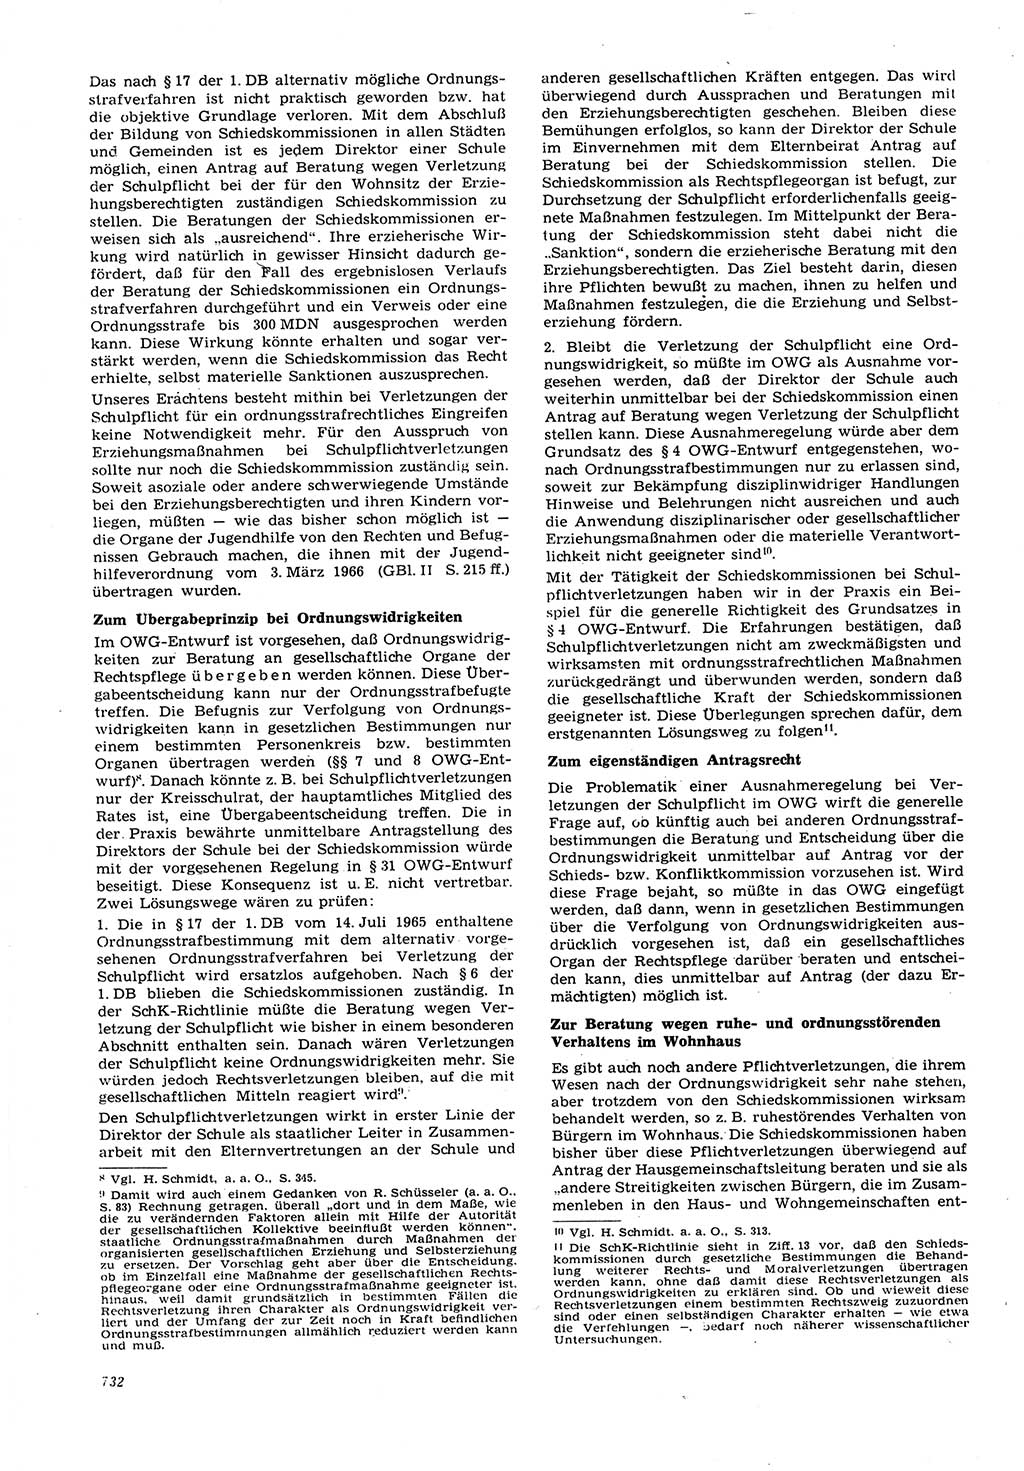 Neue Justiz (NJ), Zeitschrift für Recht und Rechtswissenschaft [Deutsche Demokratische Republik (DDR)], 21. Jahrgang 1967, Seite 732 (NJ DDR 1967, S. 732)